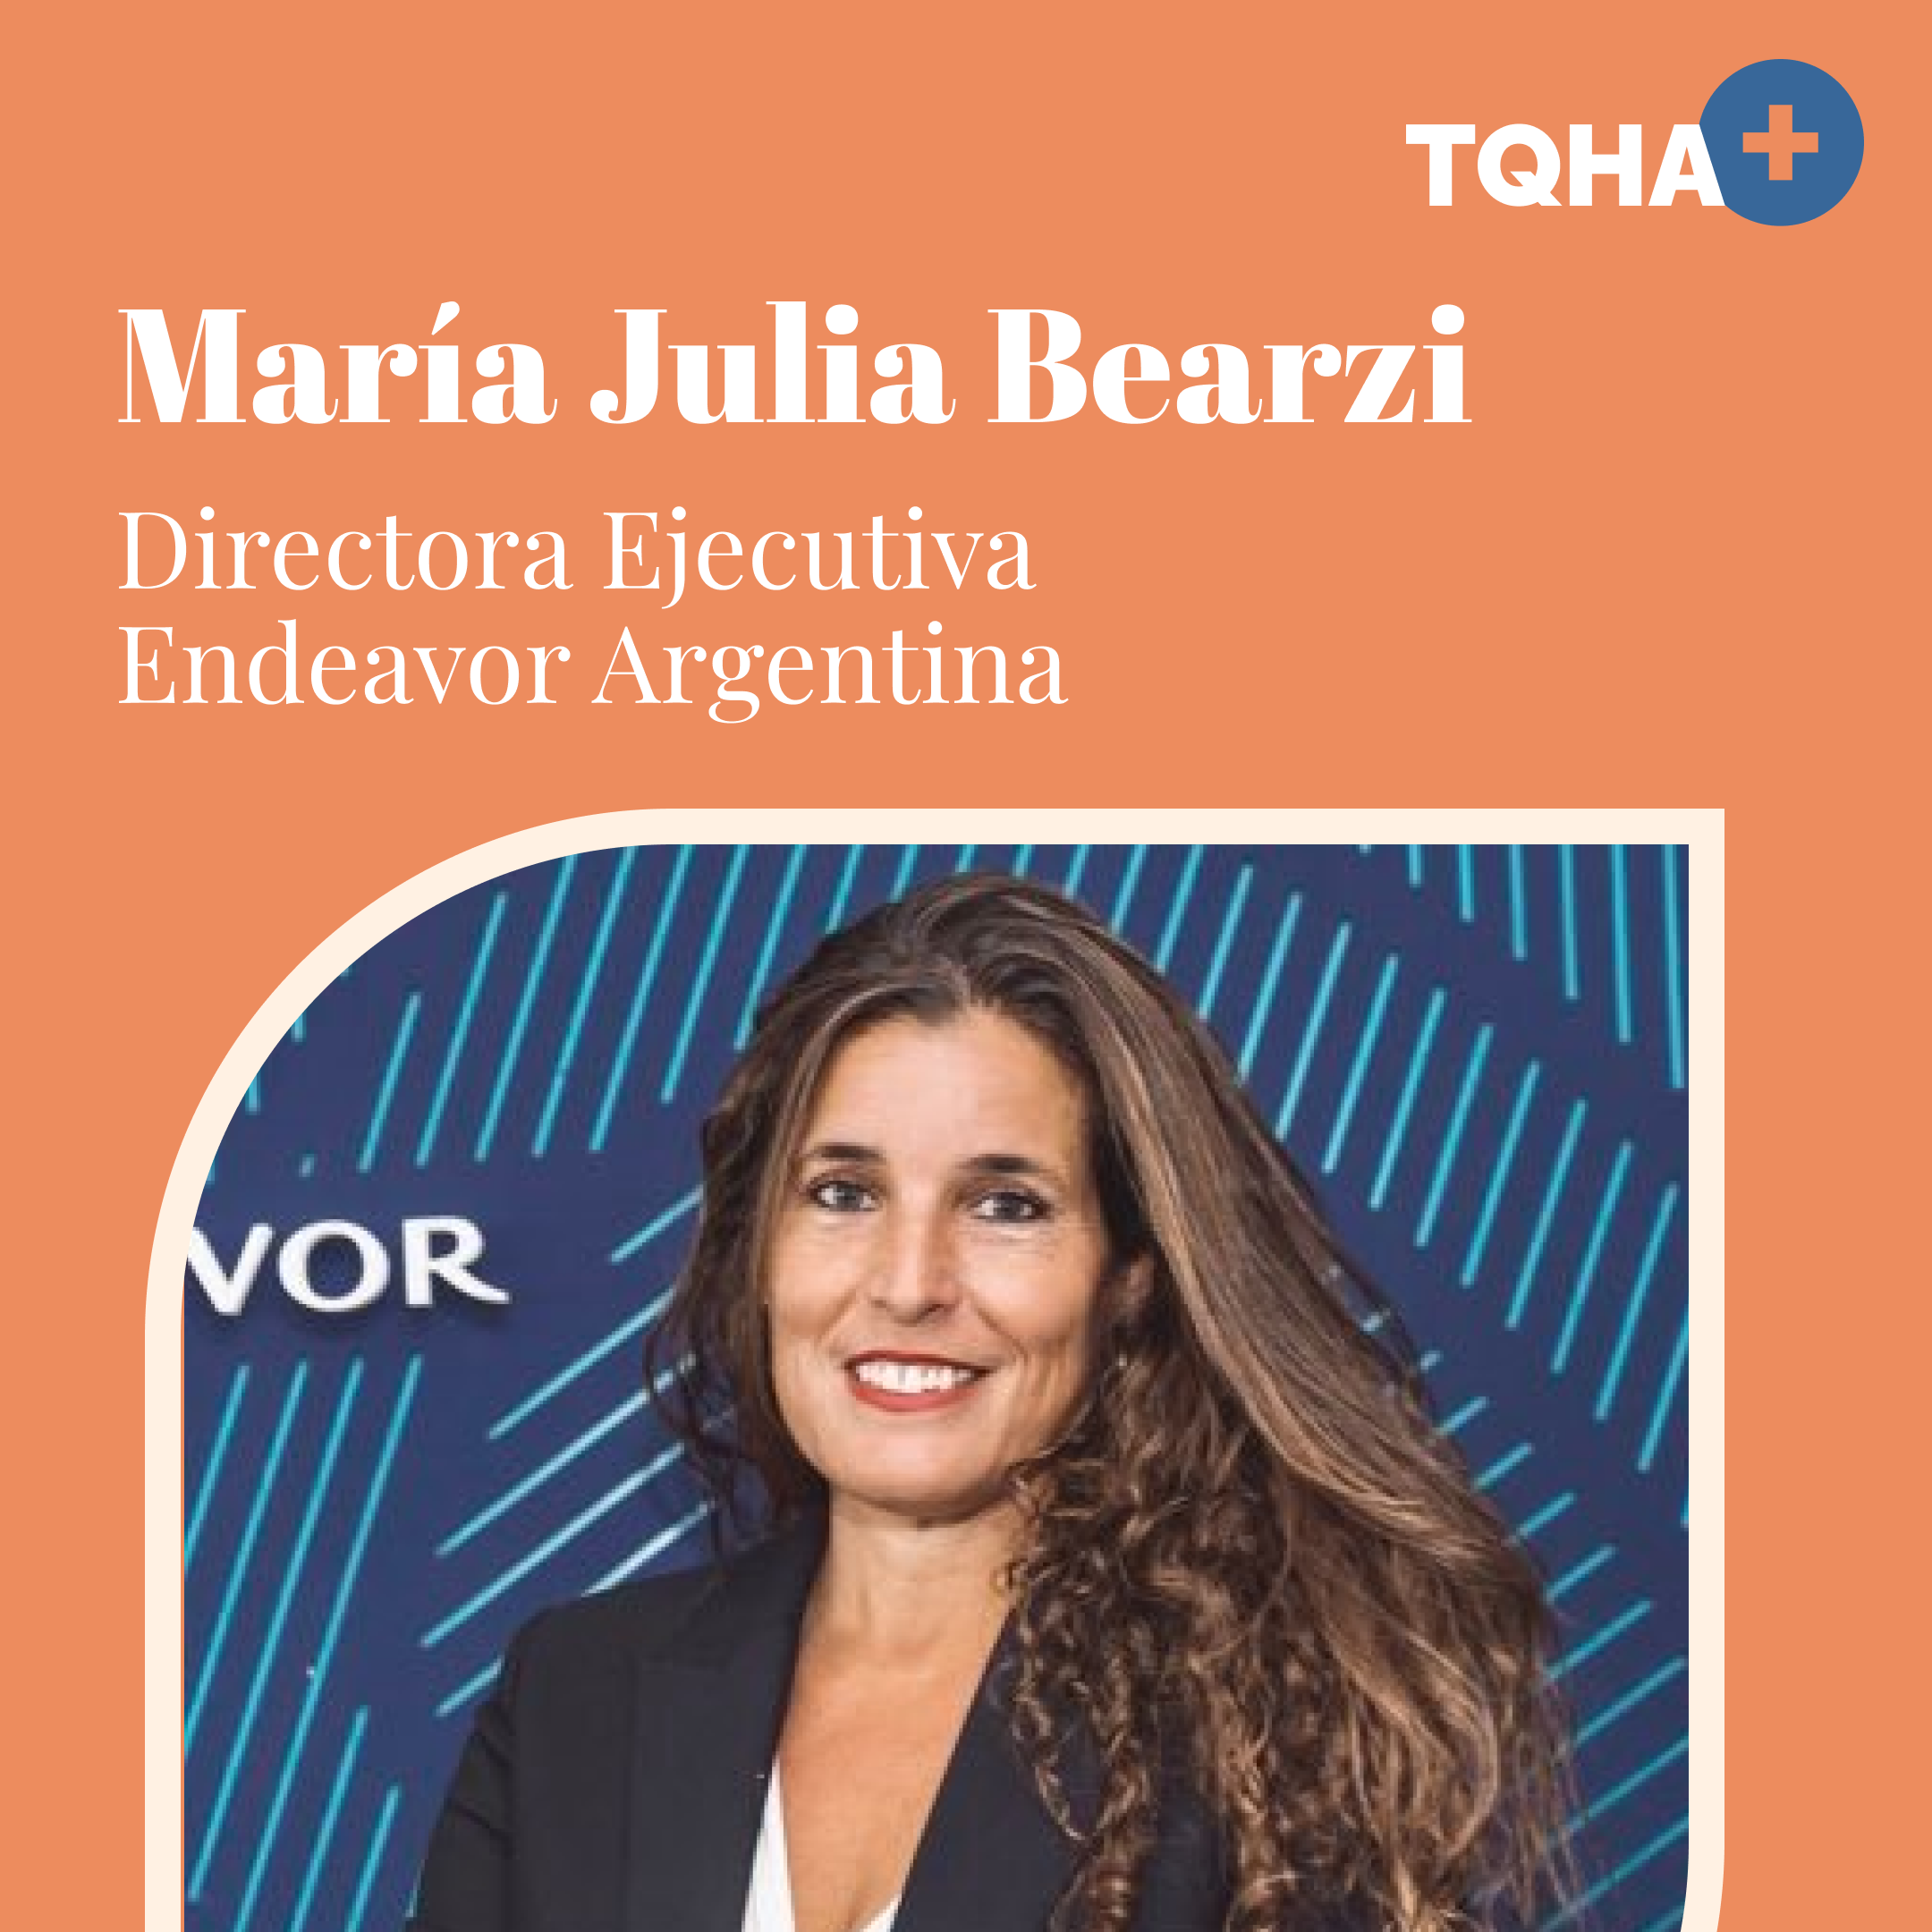 María Julia Bearzi